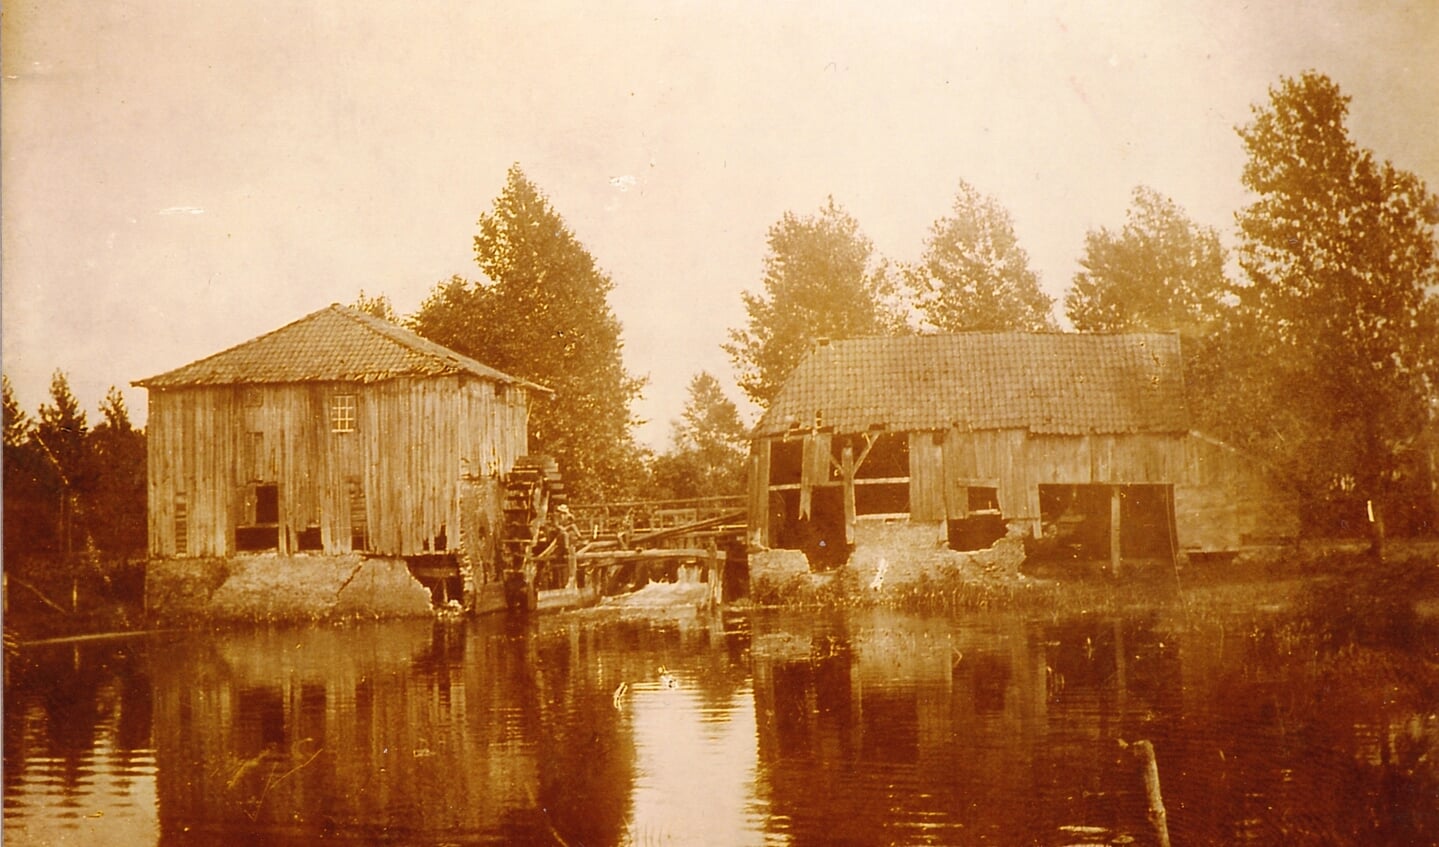 De - al deels vervallen - watermolen, gefotografeerd net voor de afbraak in 1895. Foto: collectie Leo van der Linde